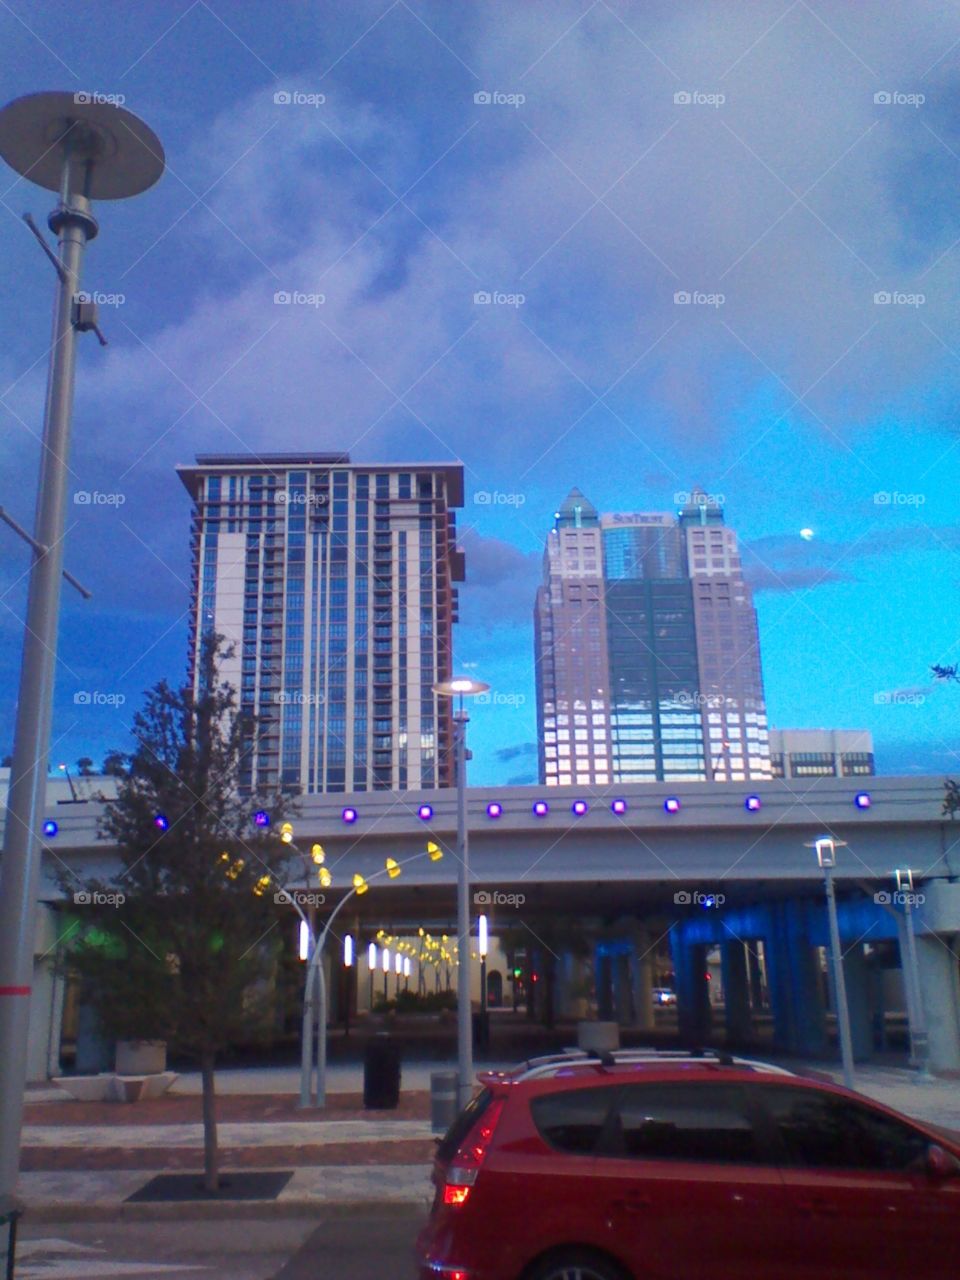 Orlando Buildings